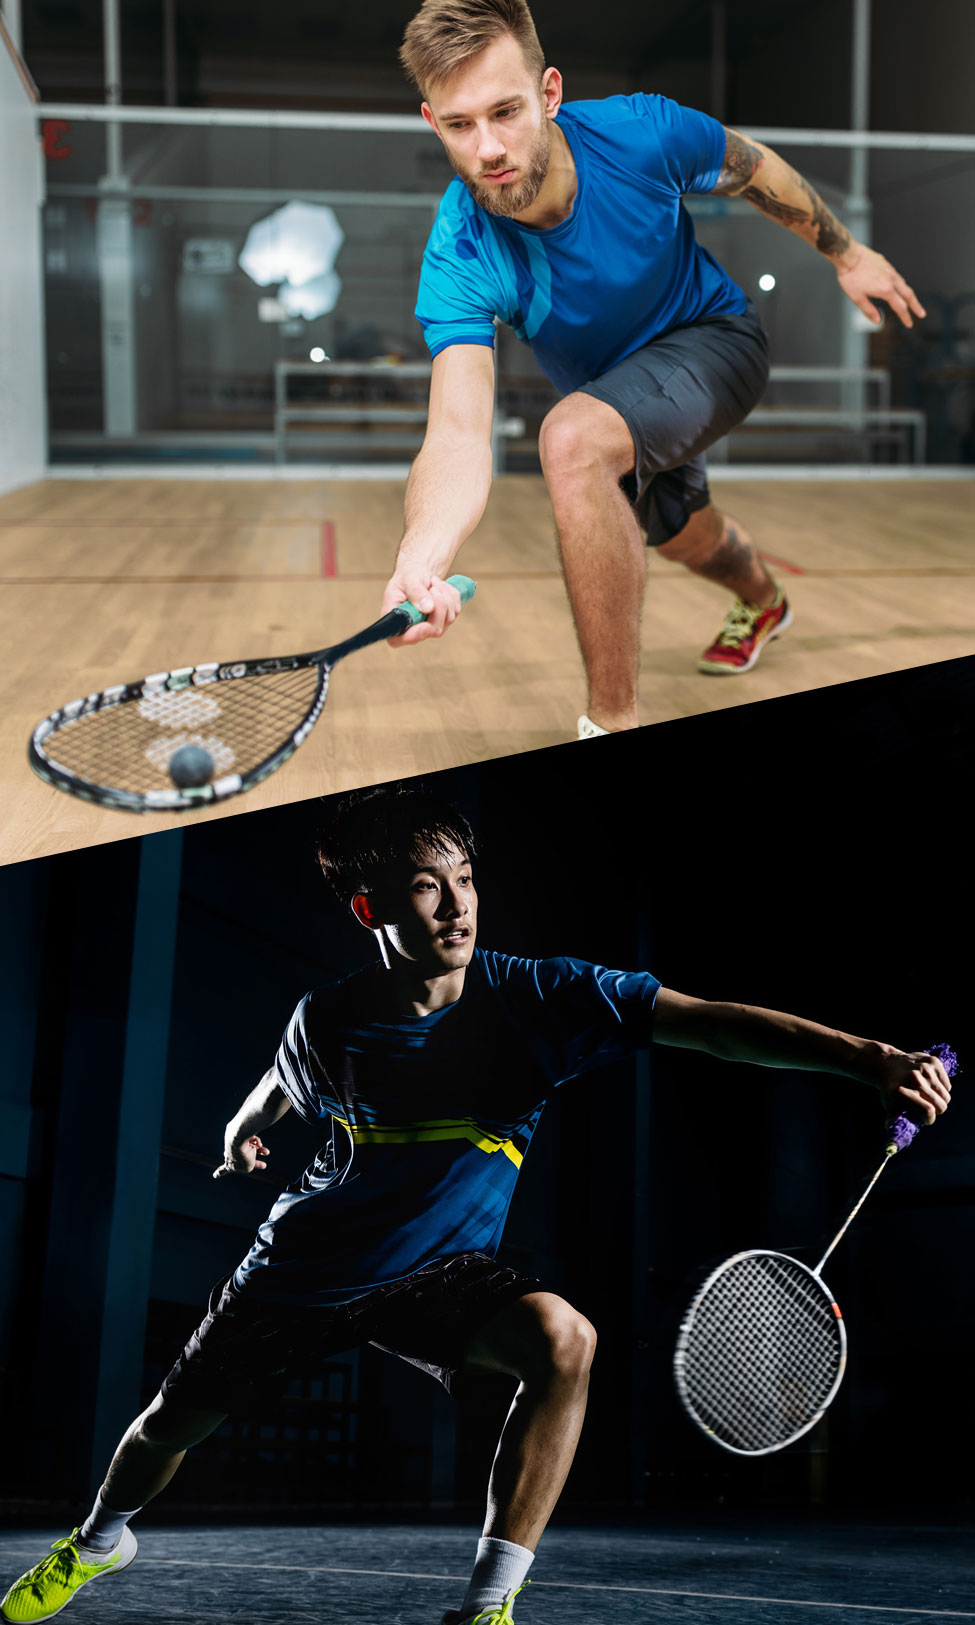 Racketsport wie Badminton, Tennis oder Squash